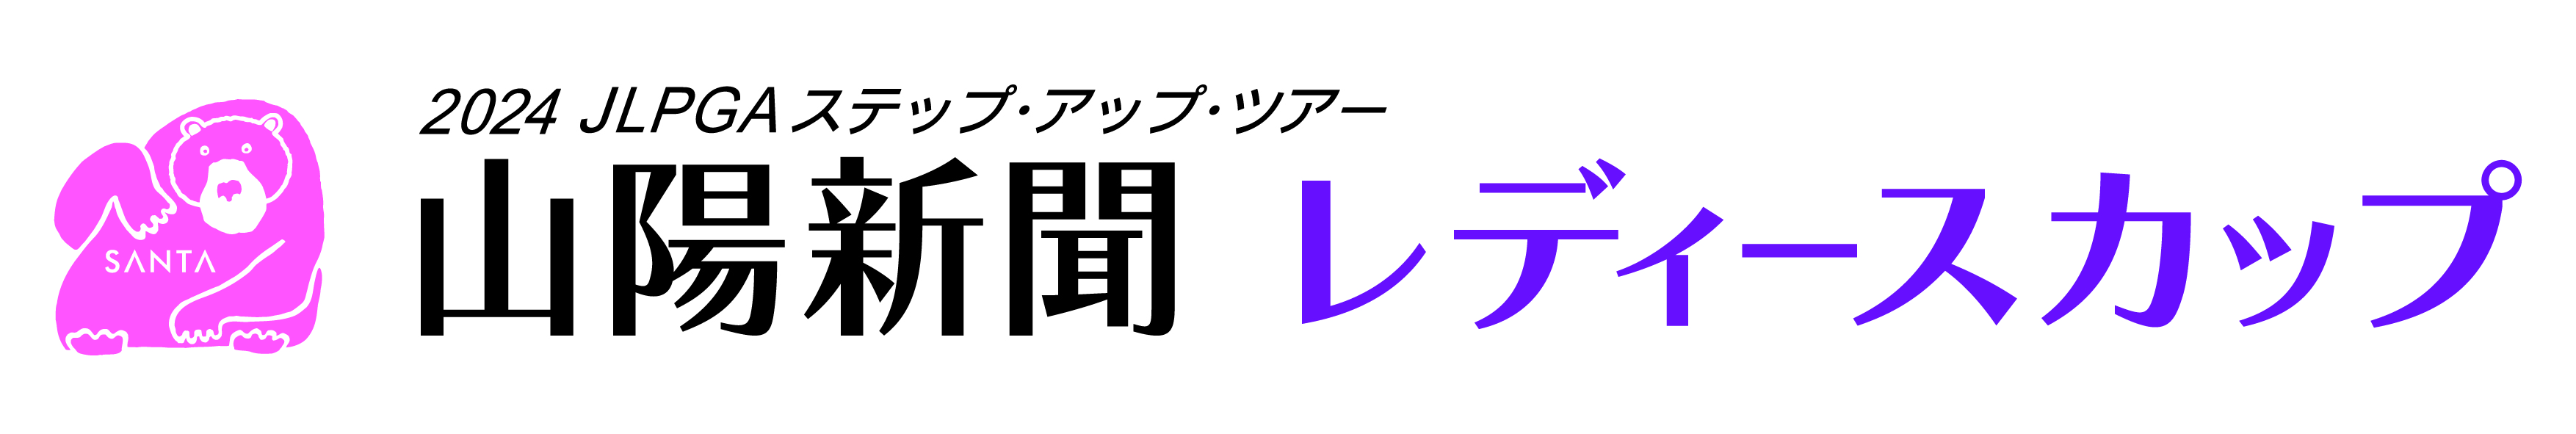 山陽新聞レディースカップロゴ